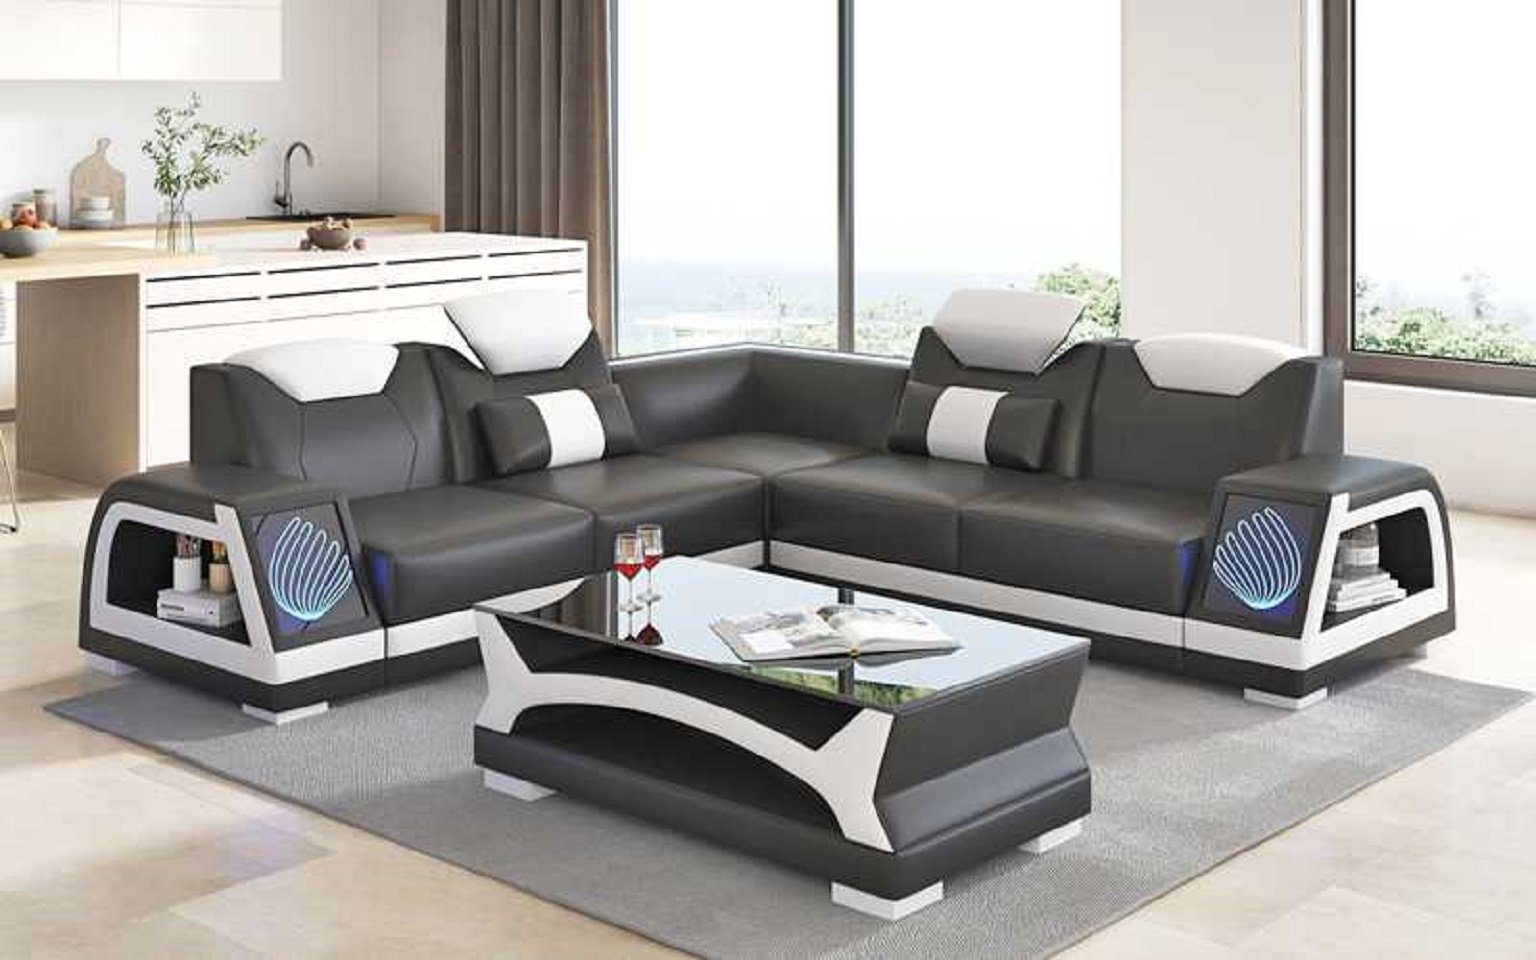 JVmoebel Ecksofa Modern Ecksofa L Form Kunstleder Sofa Couch Luxus Design Couchen, 3 Teile, Made in Europe Schwarz